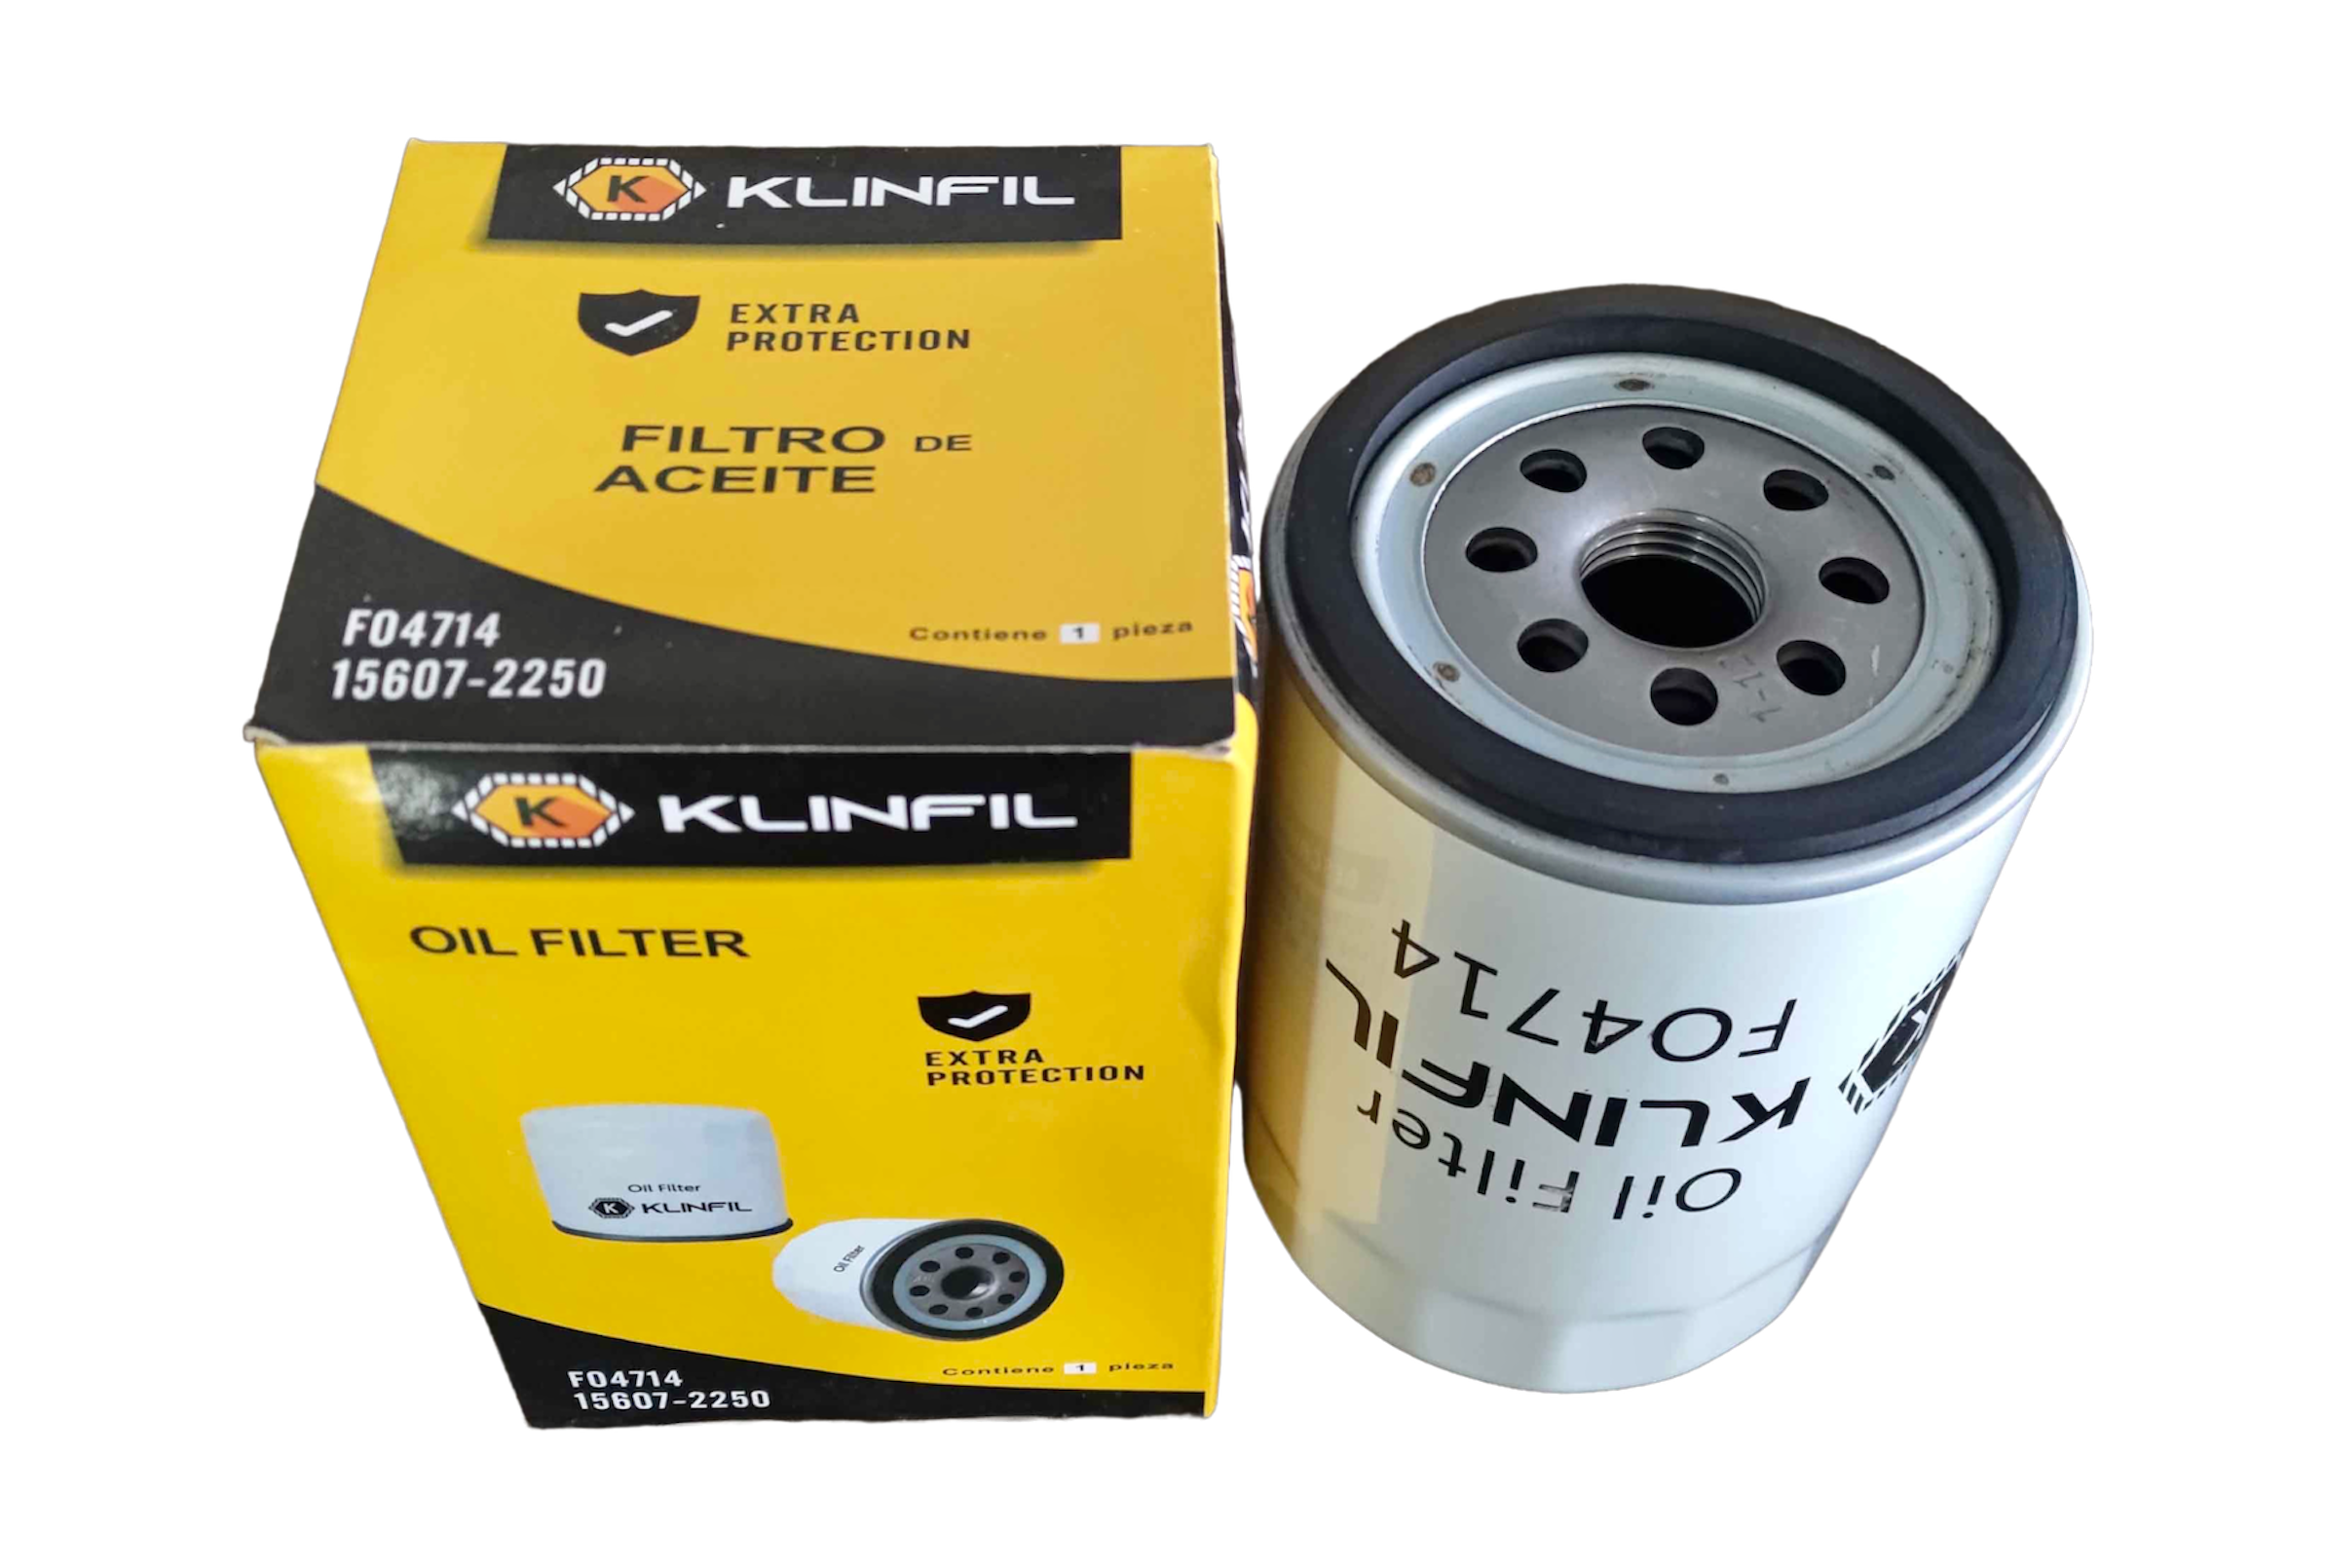 KLINFIL Filtro de Aceite - Intra Lemans Industries S.A.